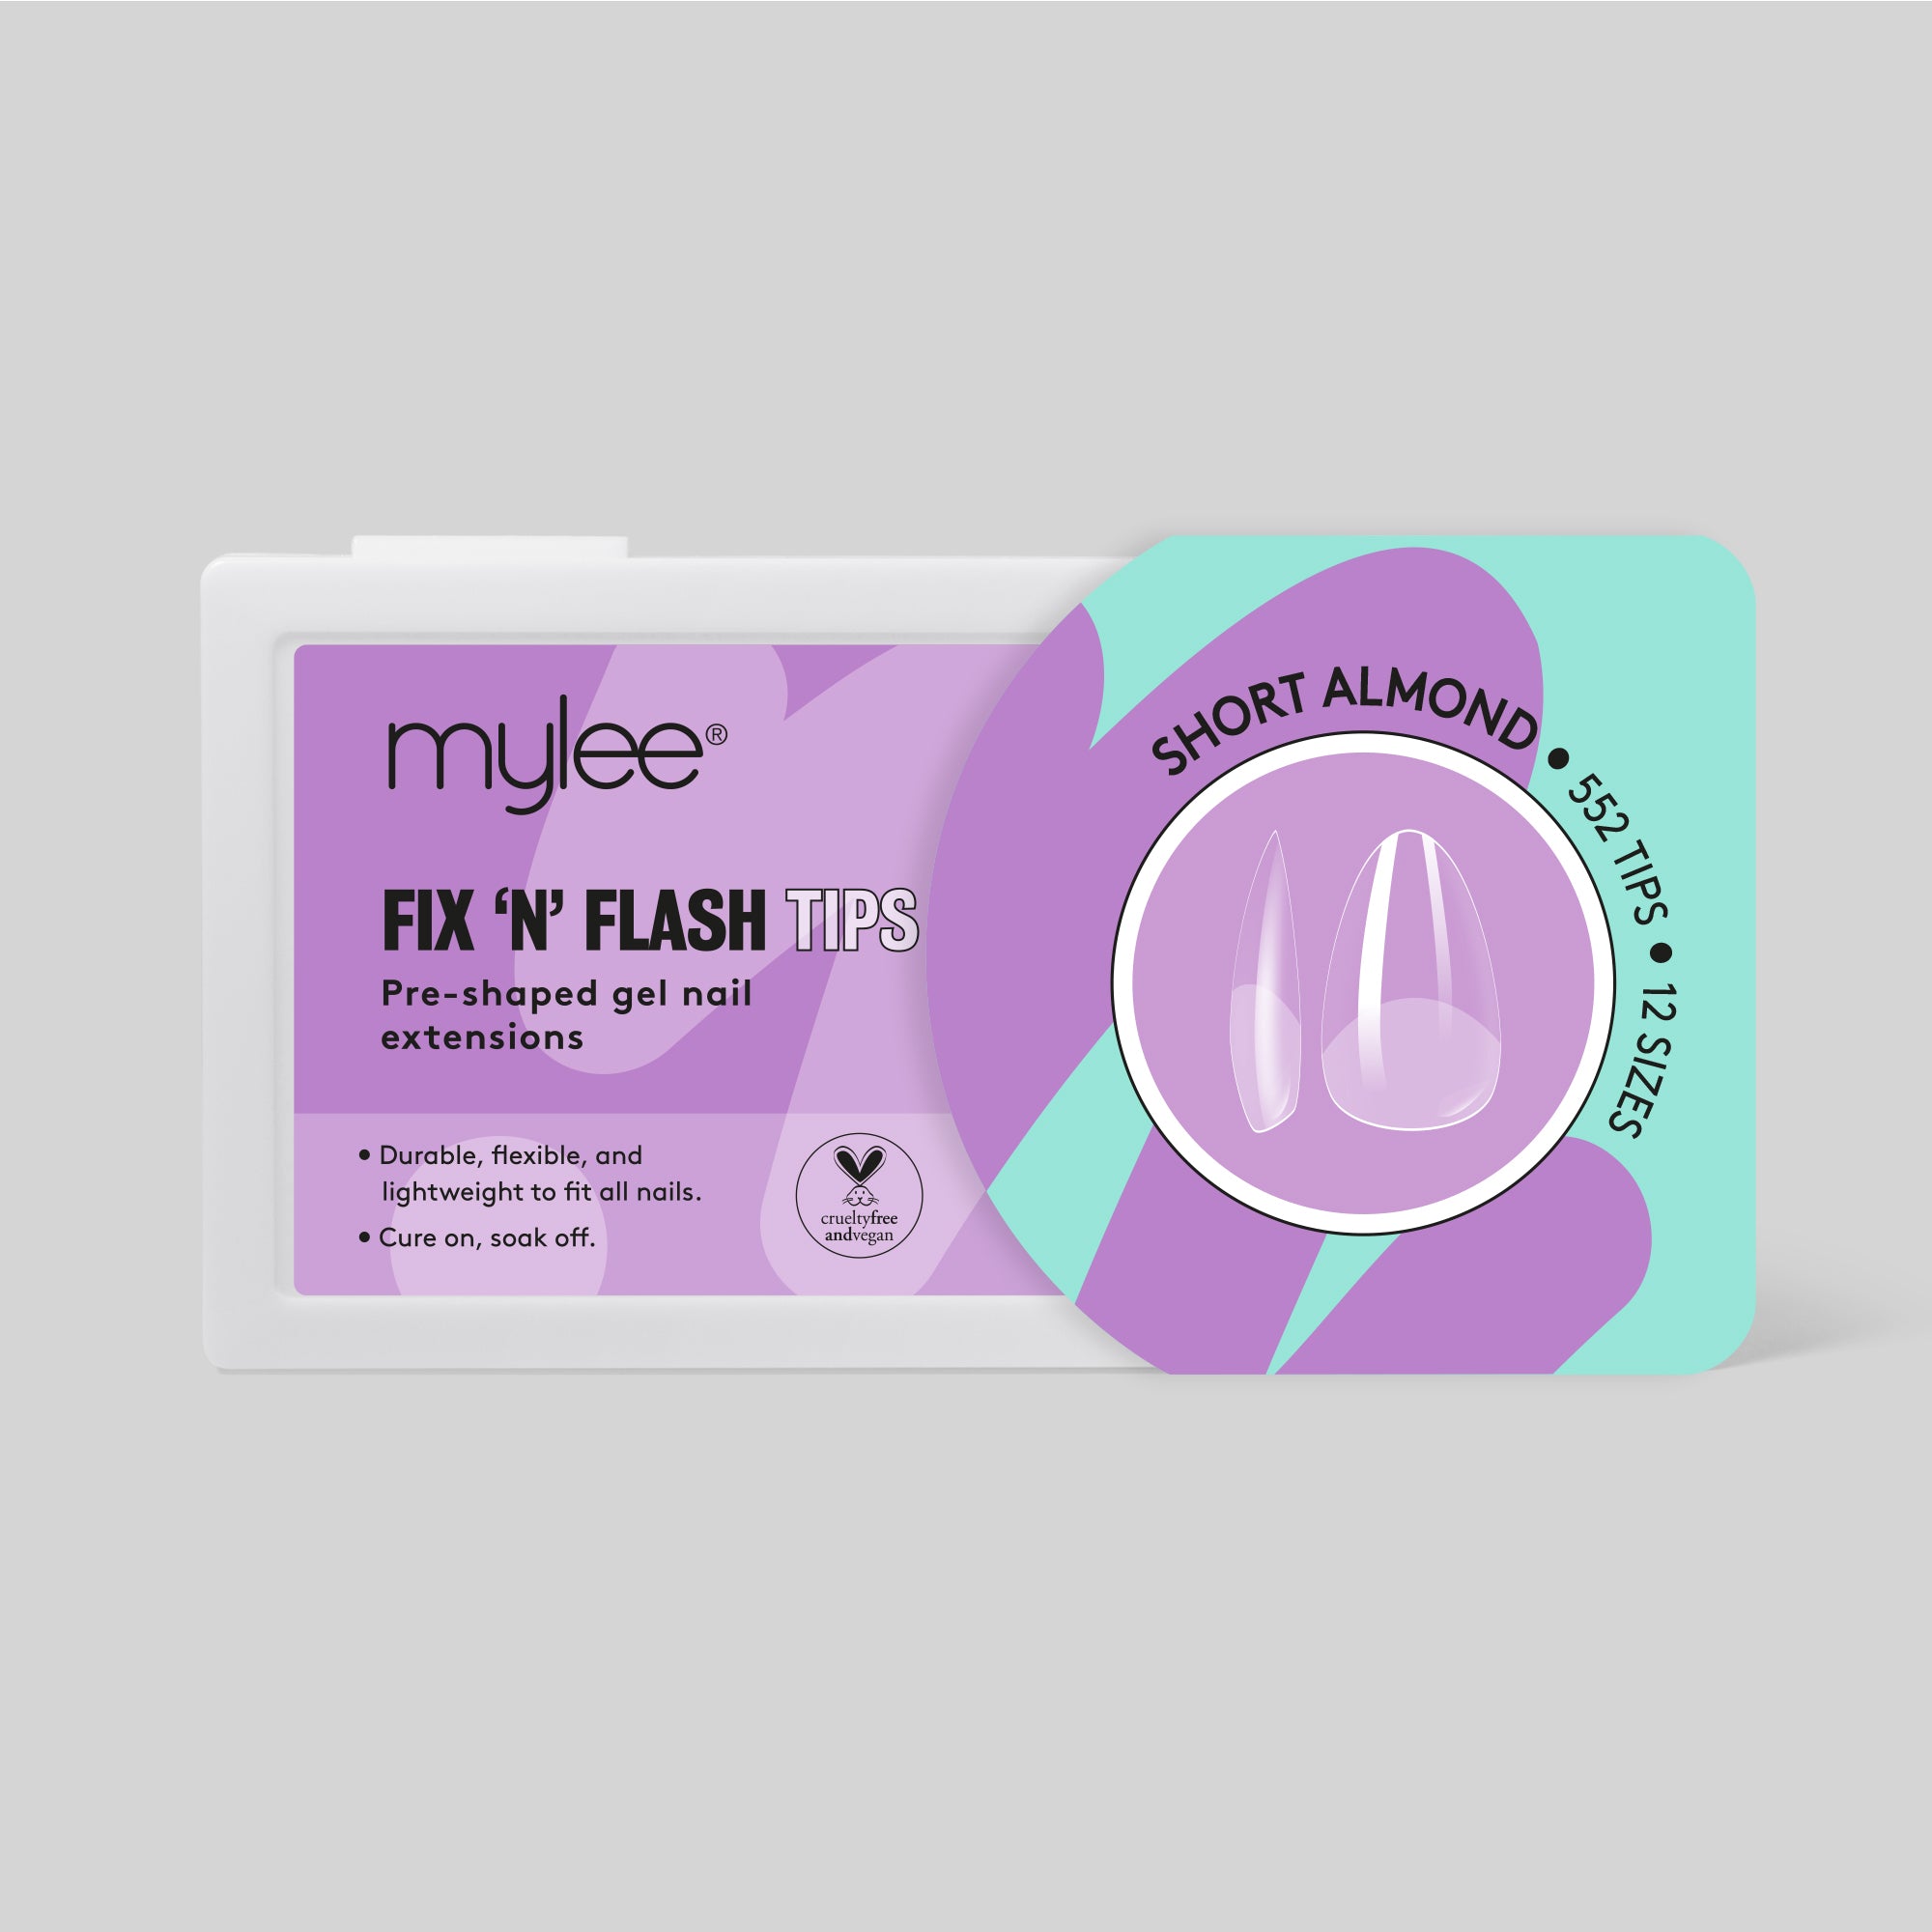 Mylee Fix 'N' Flash Tips - Short Almond